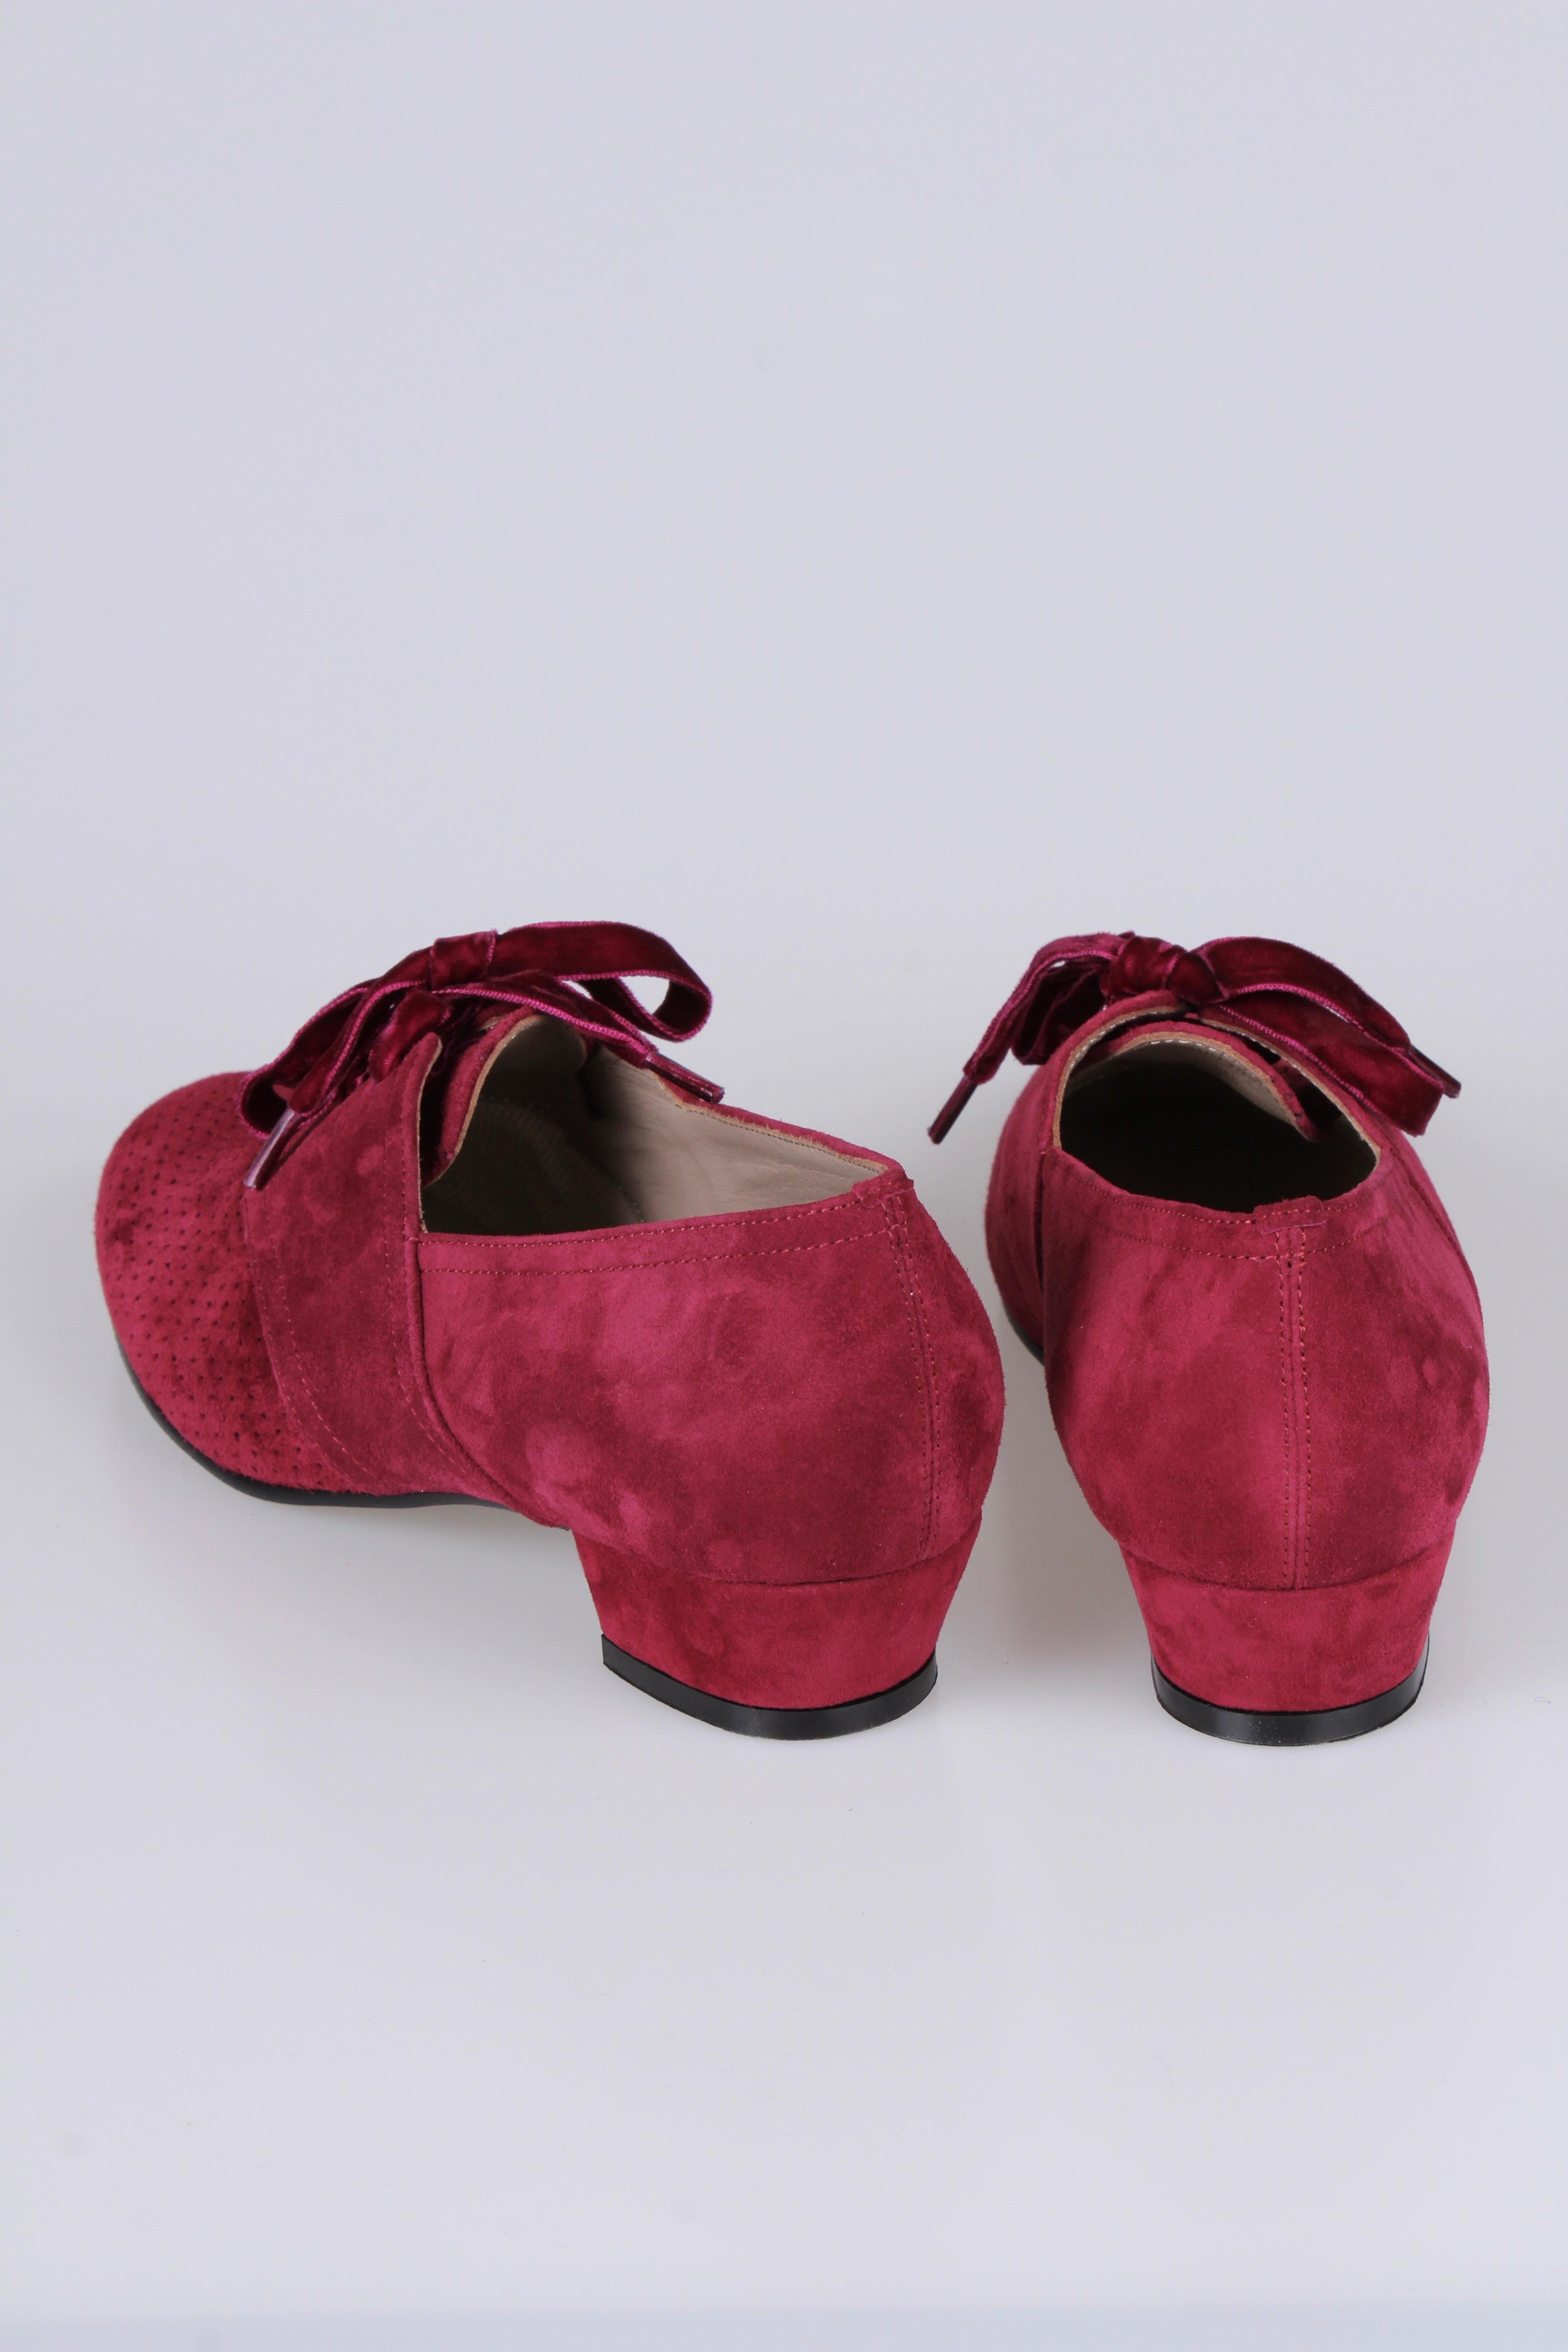 1940'er vintage style Oxford sko i ruskind med snøre - Lav hæl - Bordeaux Rød - Esther